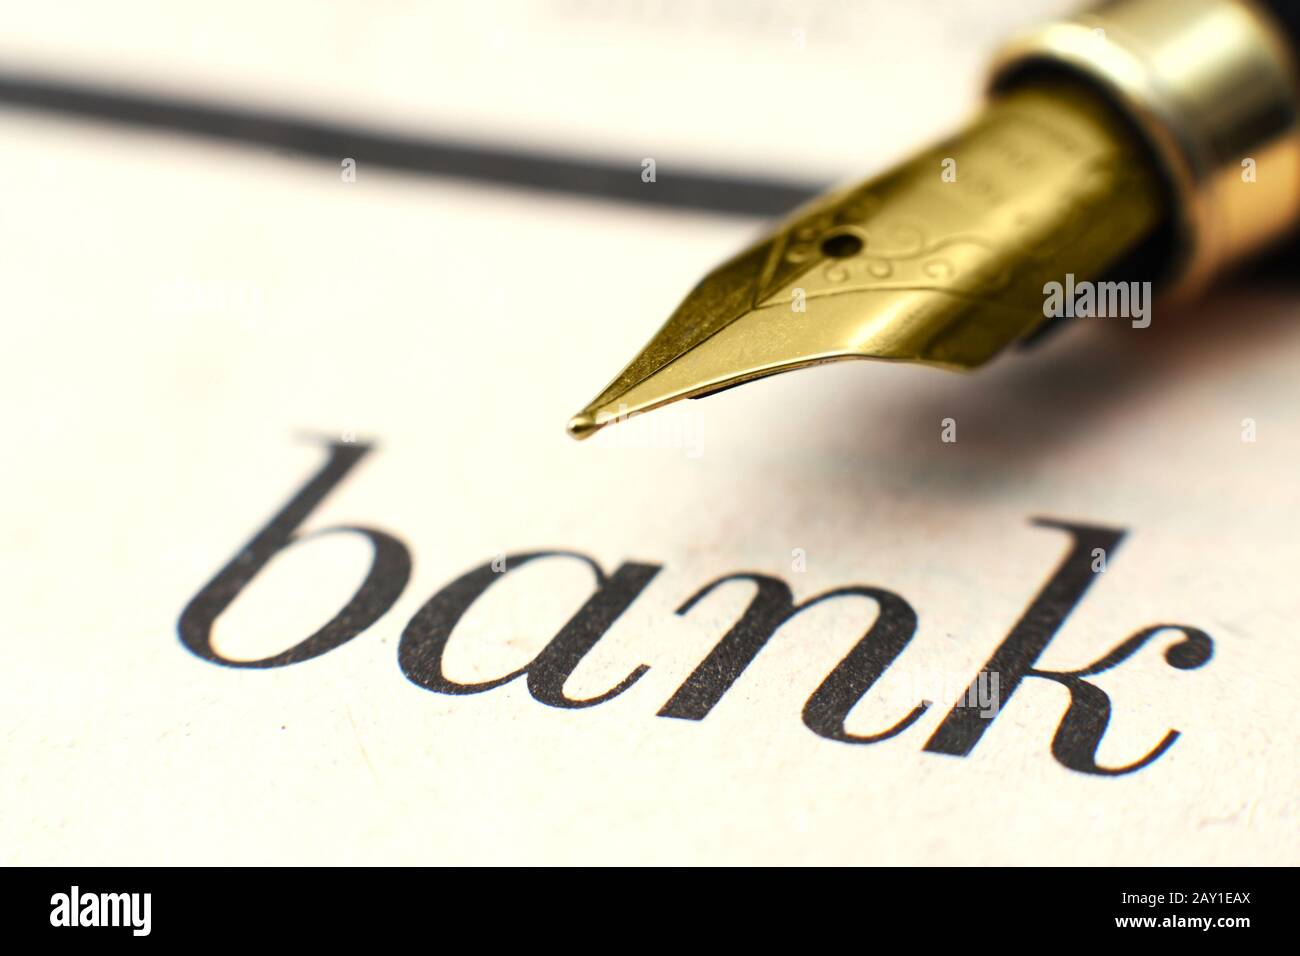 Bank concept Stock Photo